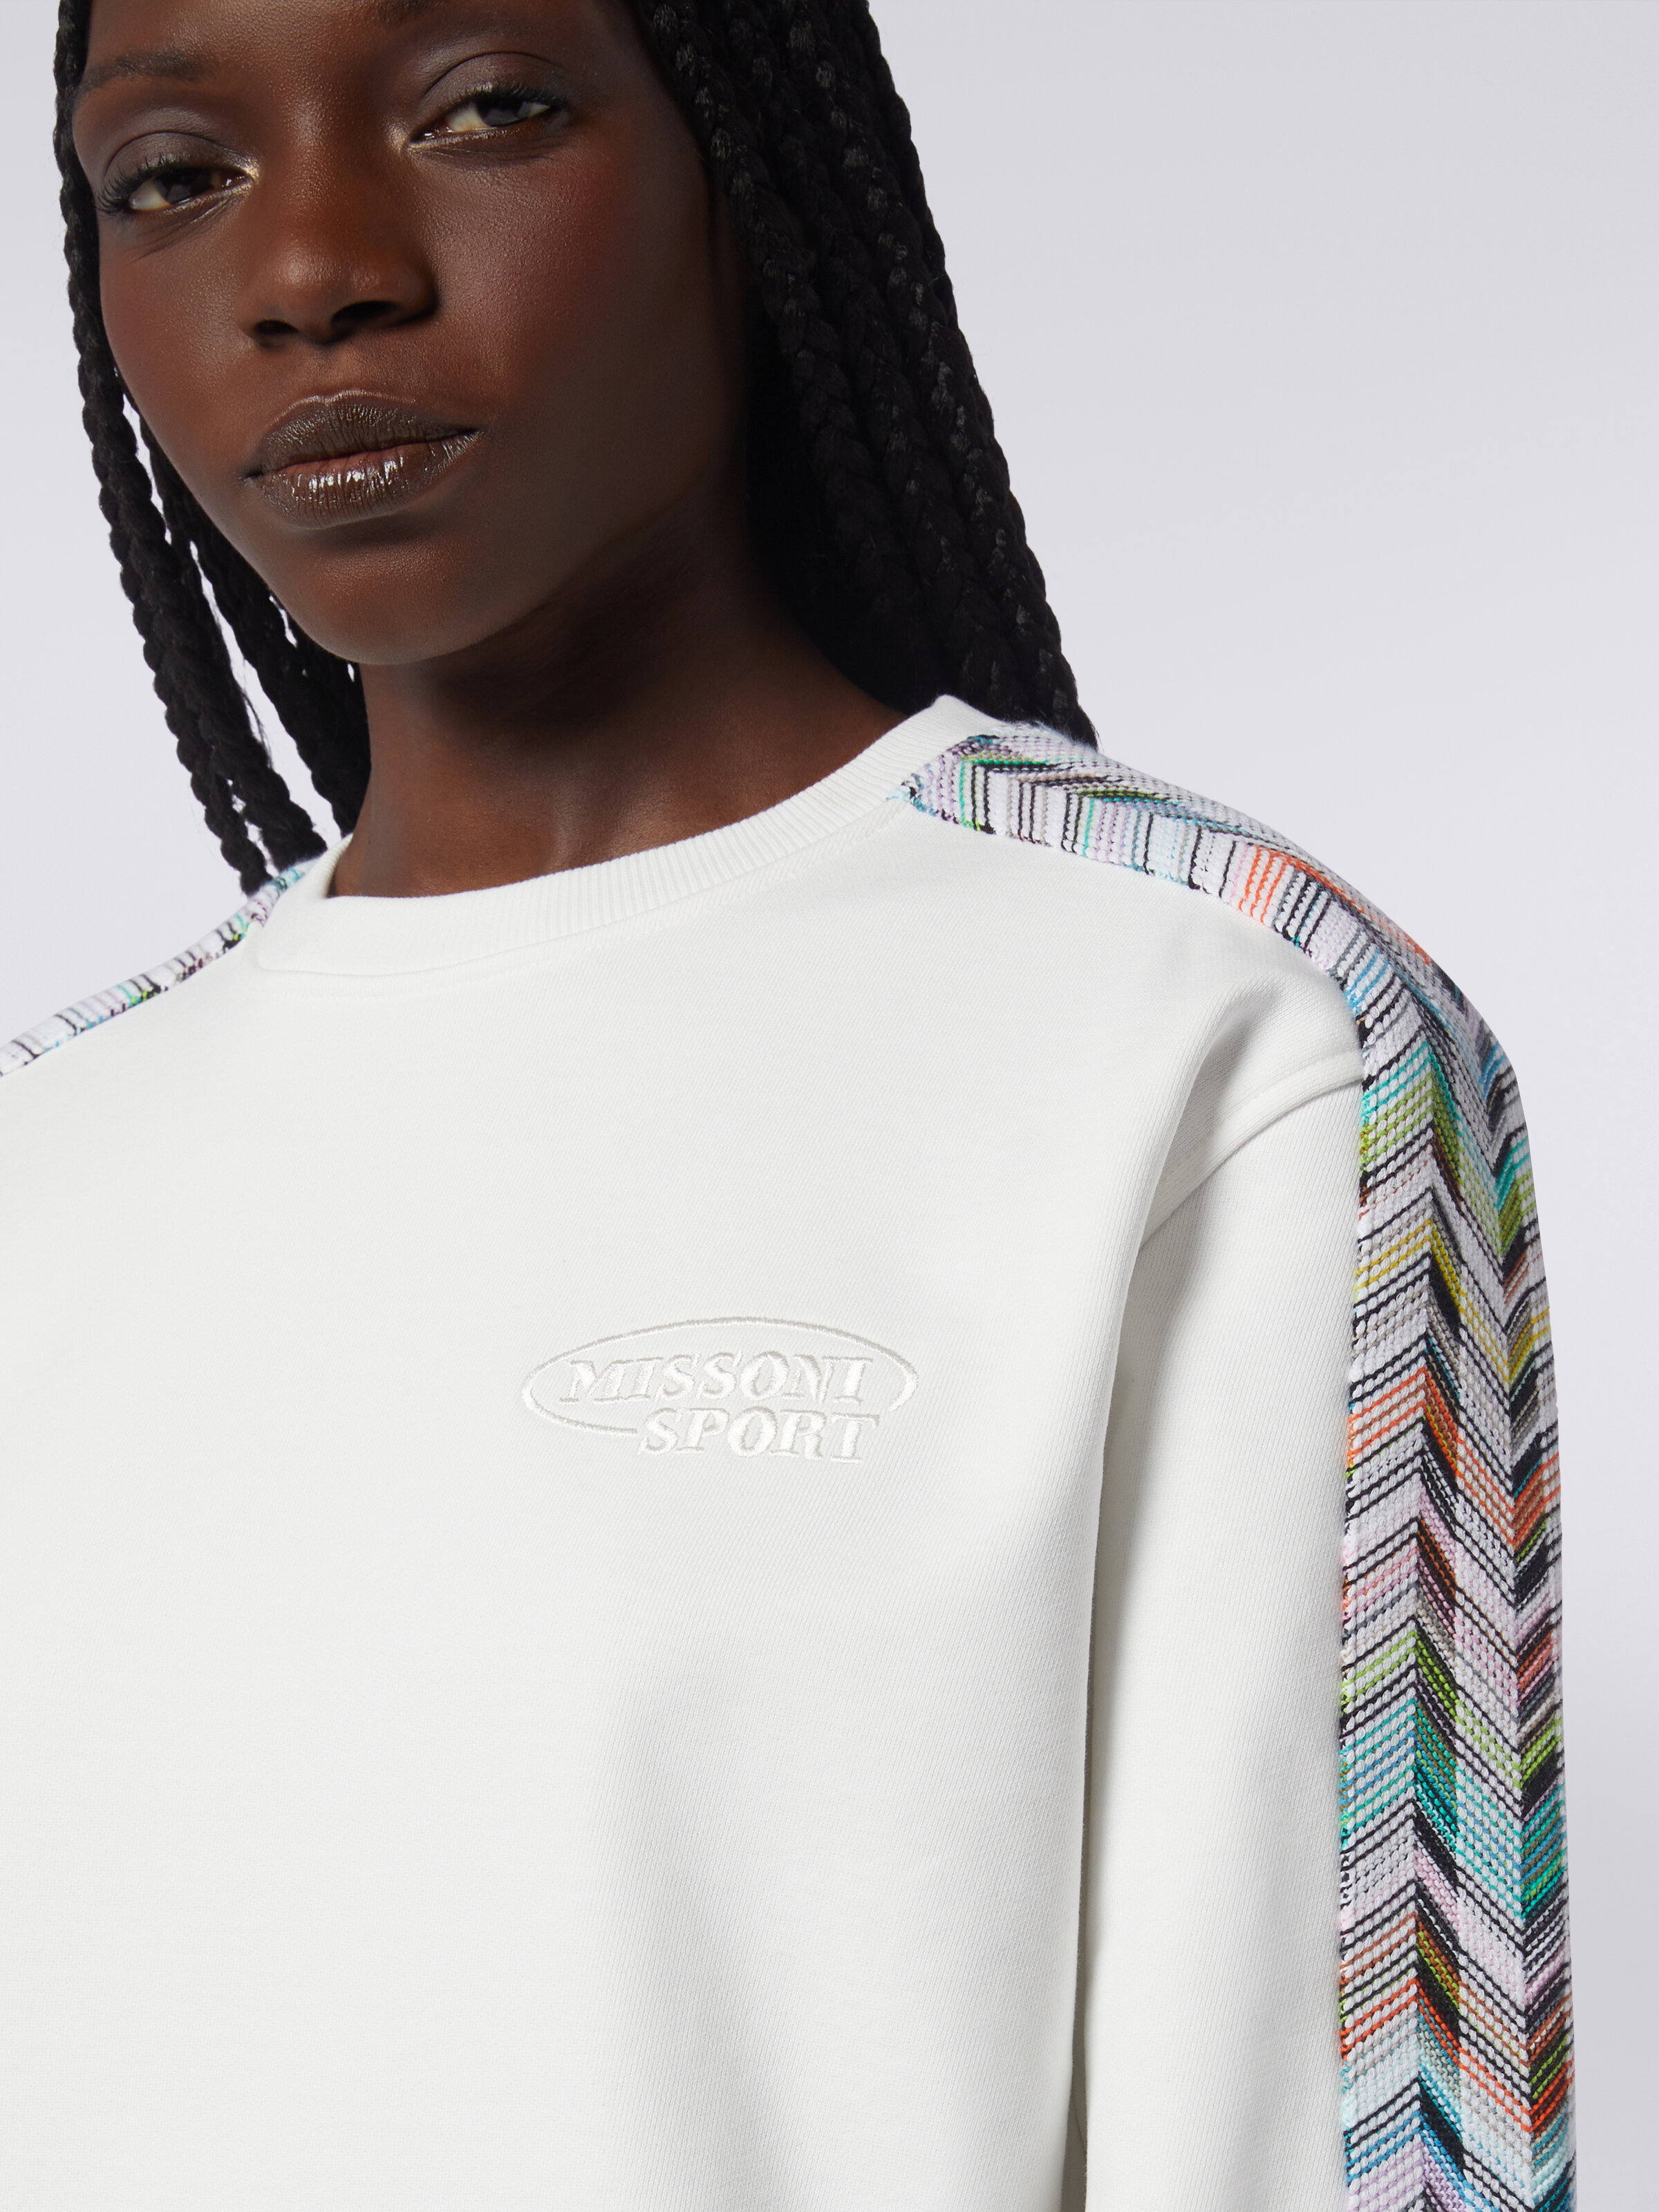 Sweatshirt mit Rundhalsausschnitt, Logo und Details aus Strick, Mehrfarbig  - 4